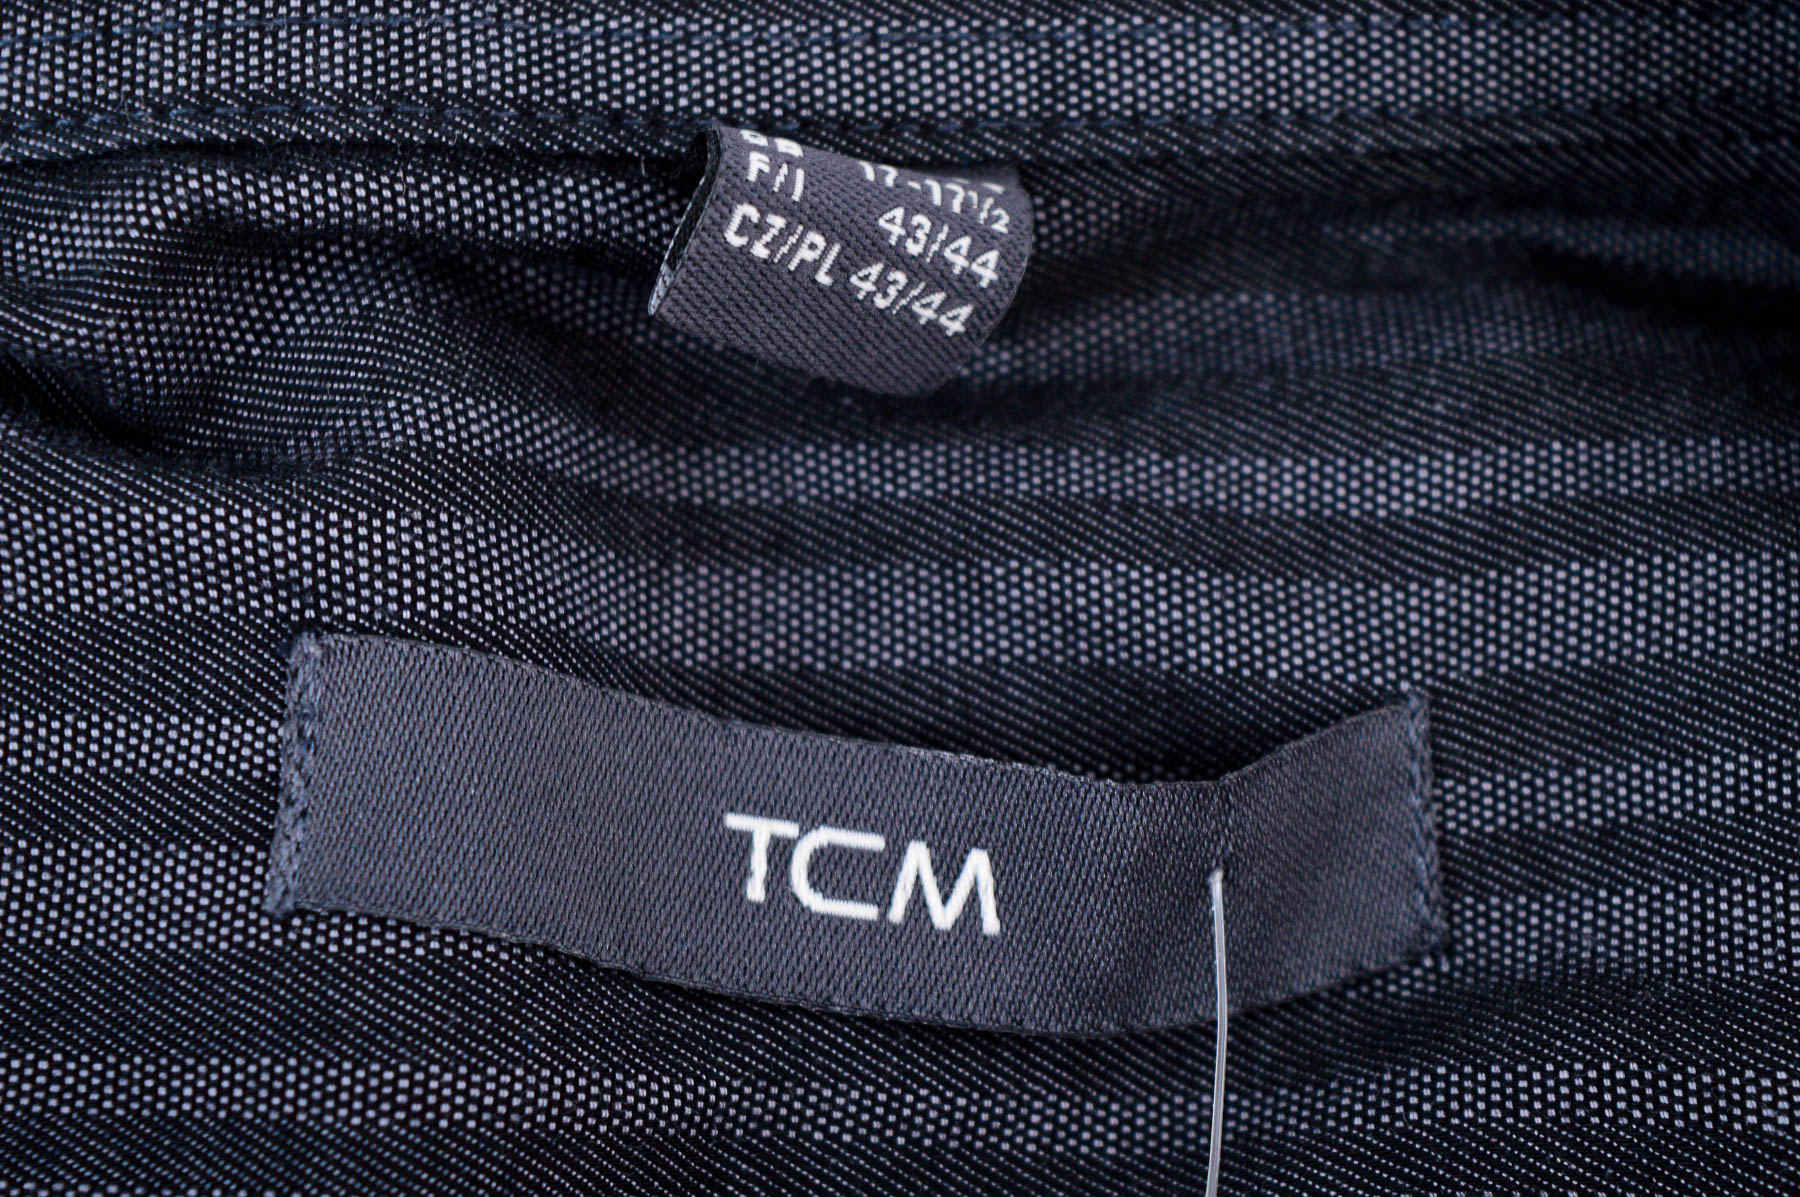 Cămașă pentru bărbați - TCM - 2